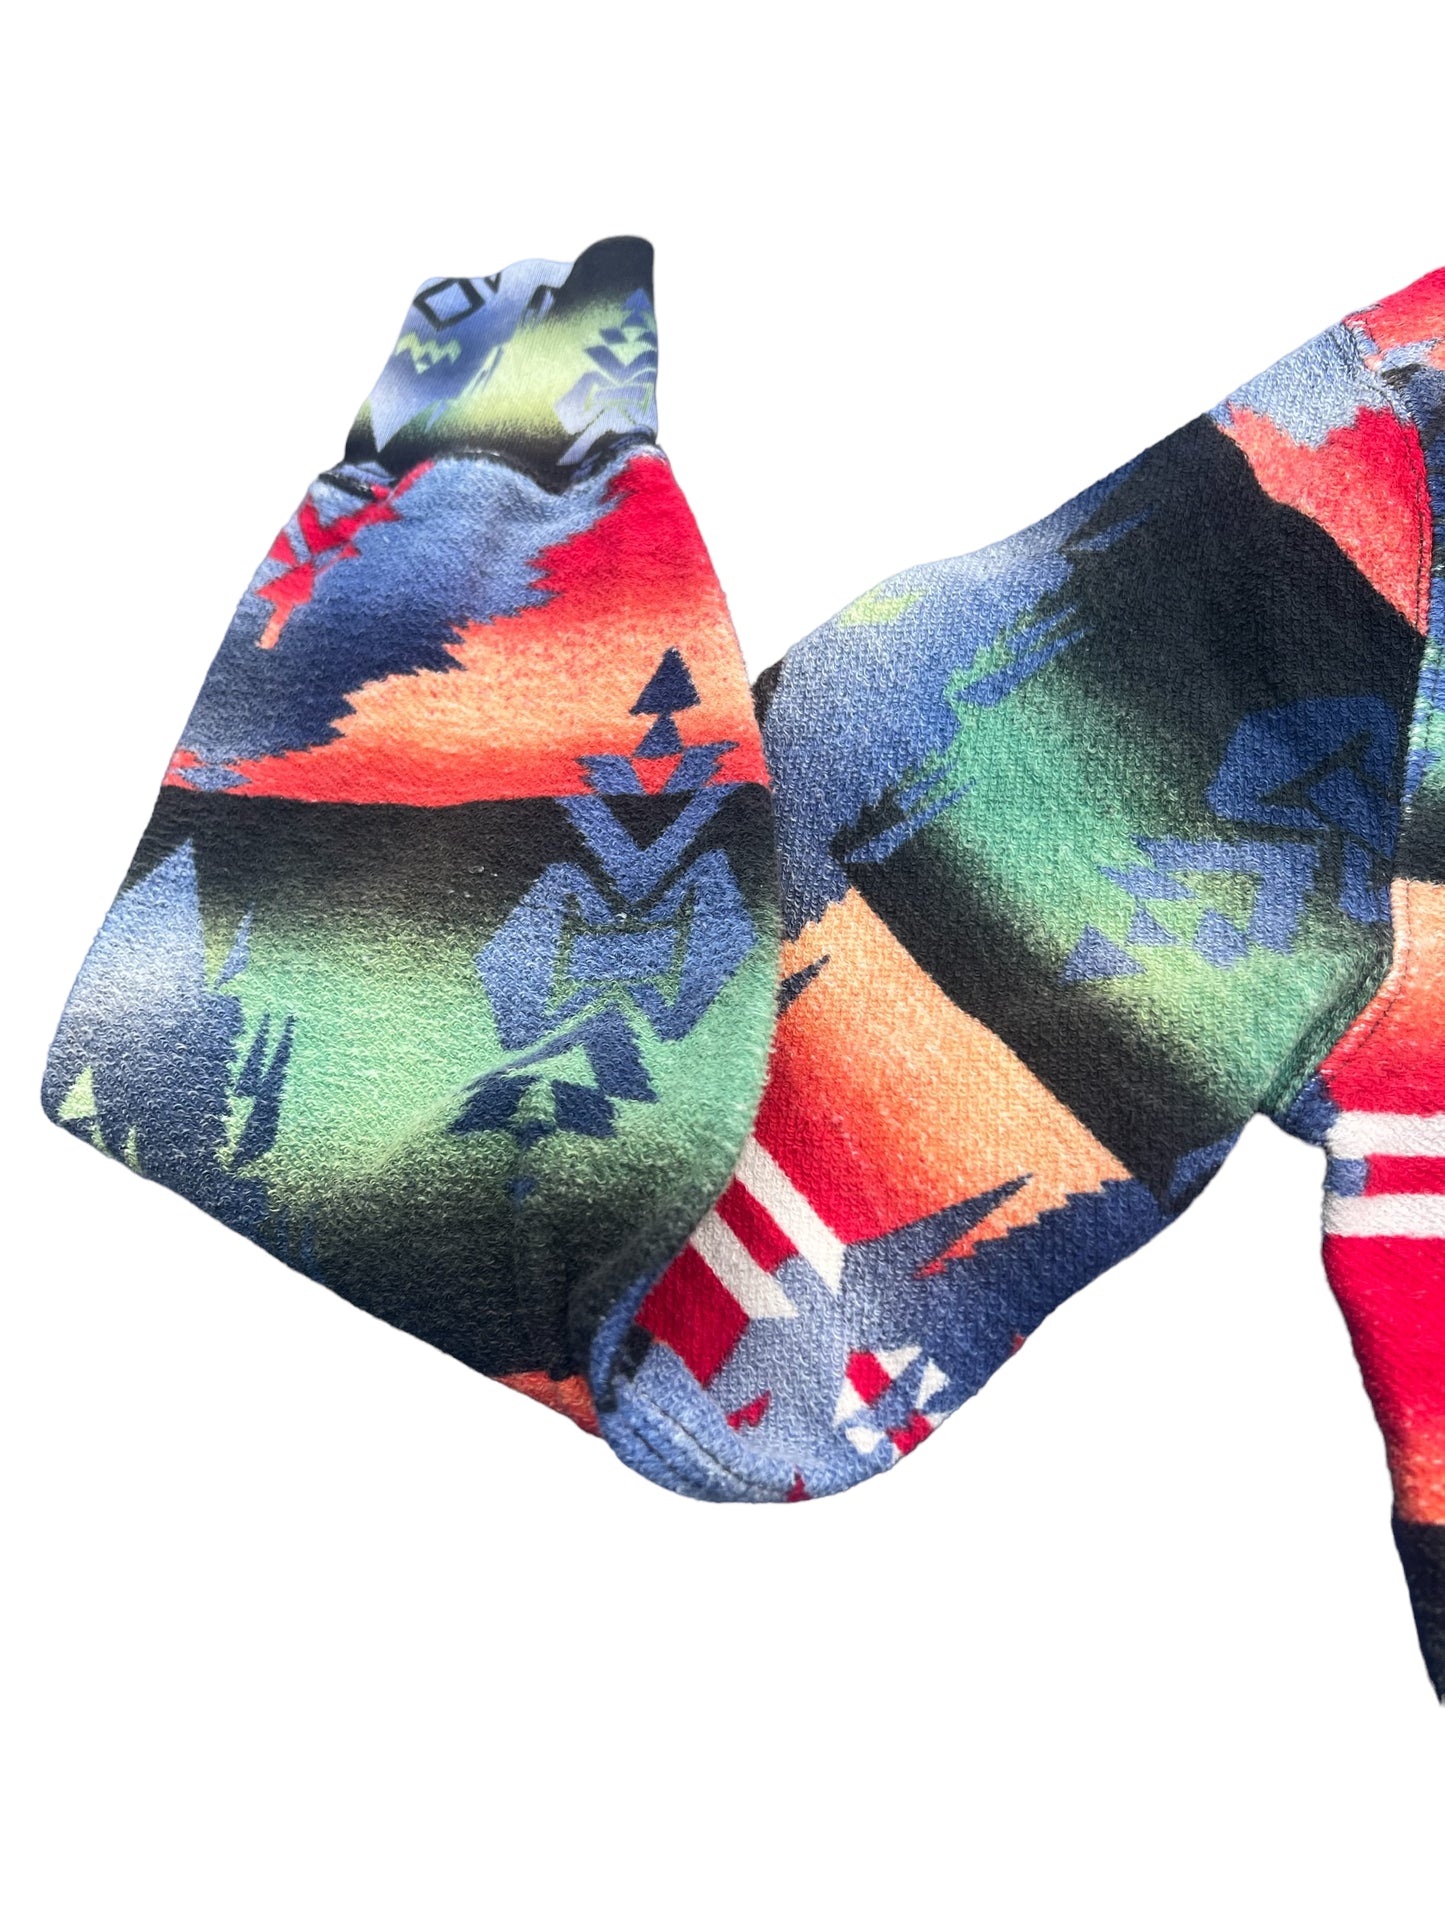 Polo Ralph Lauren Men’s Aztec Southwestern Hoodie Sweatshirt Size S